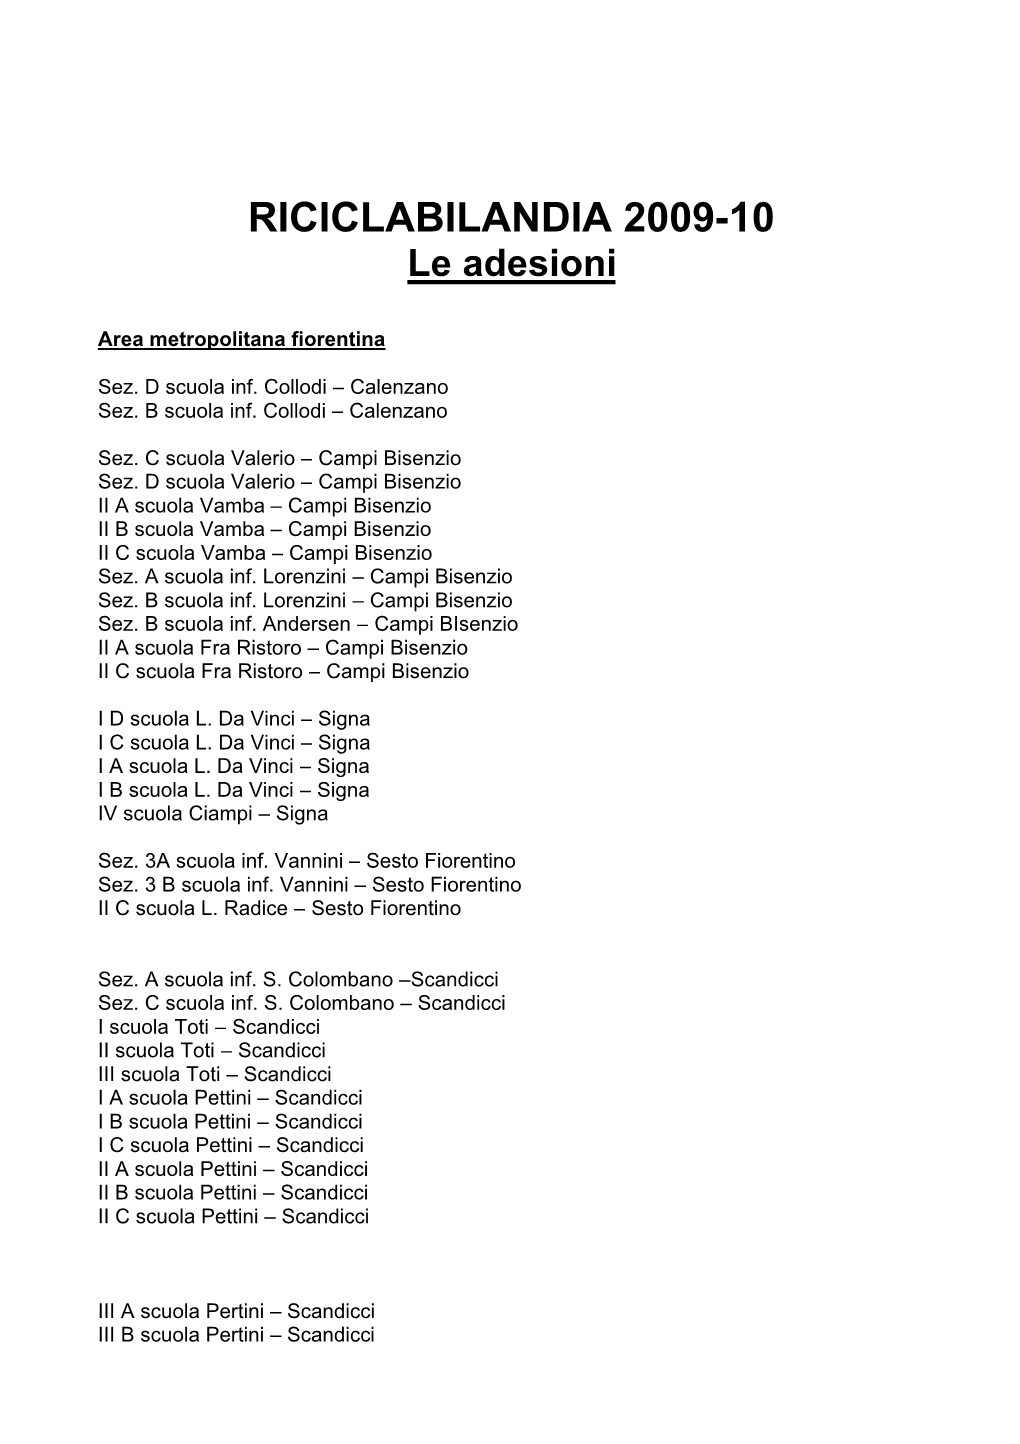 RICICLABILANDIA 2009-10 Le Adesioni